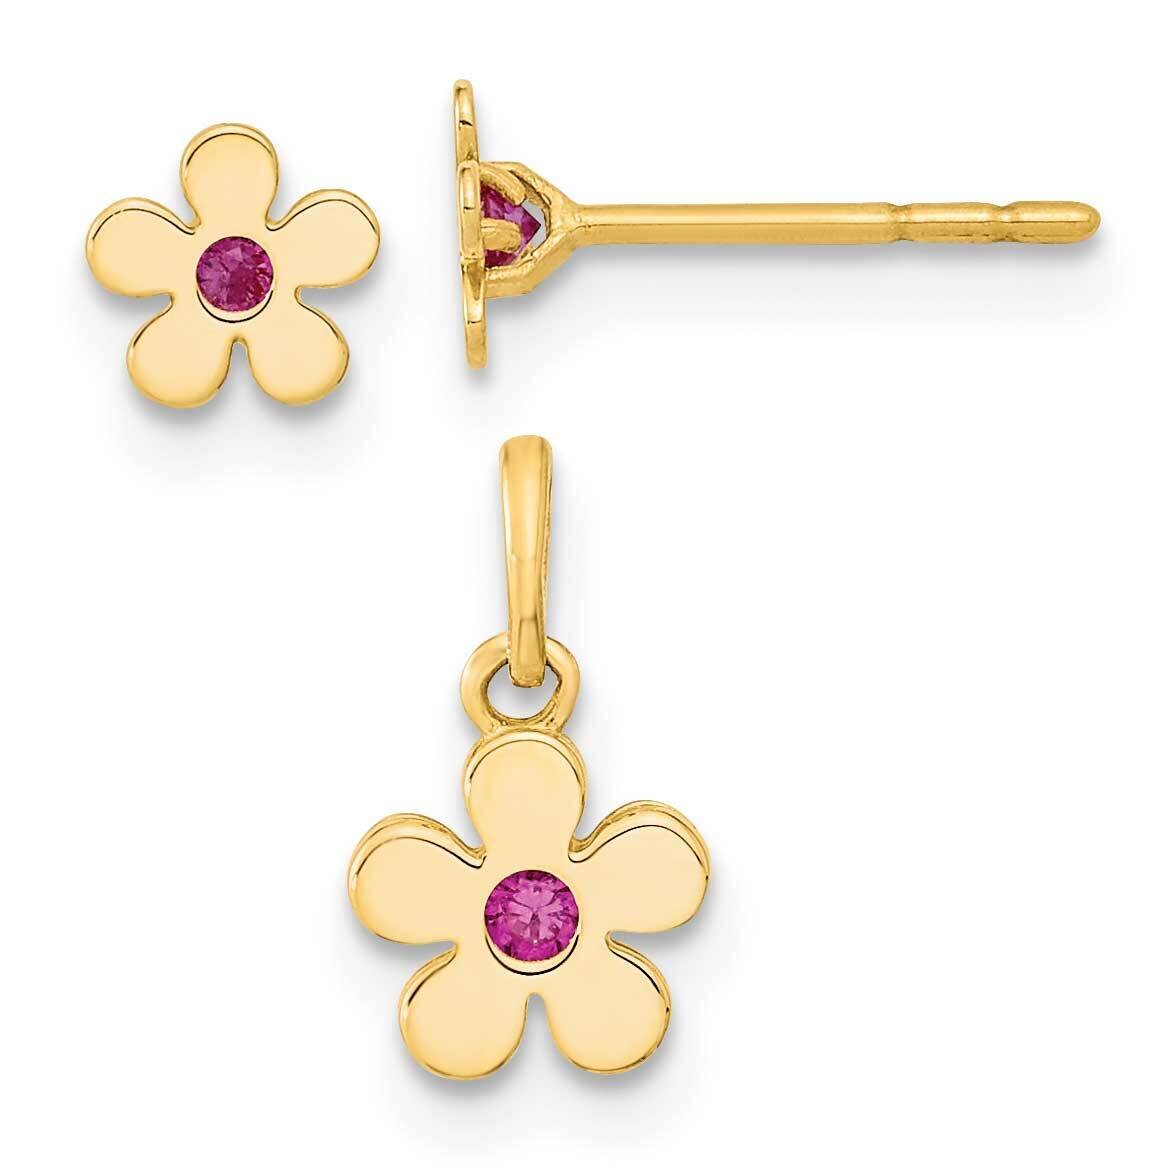 CZ Diamond Flower Post Earrings and Flower Pendant Set 14k Gold Polished GK1105